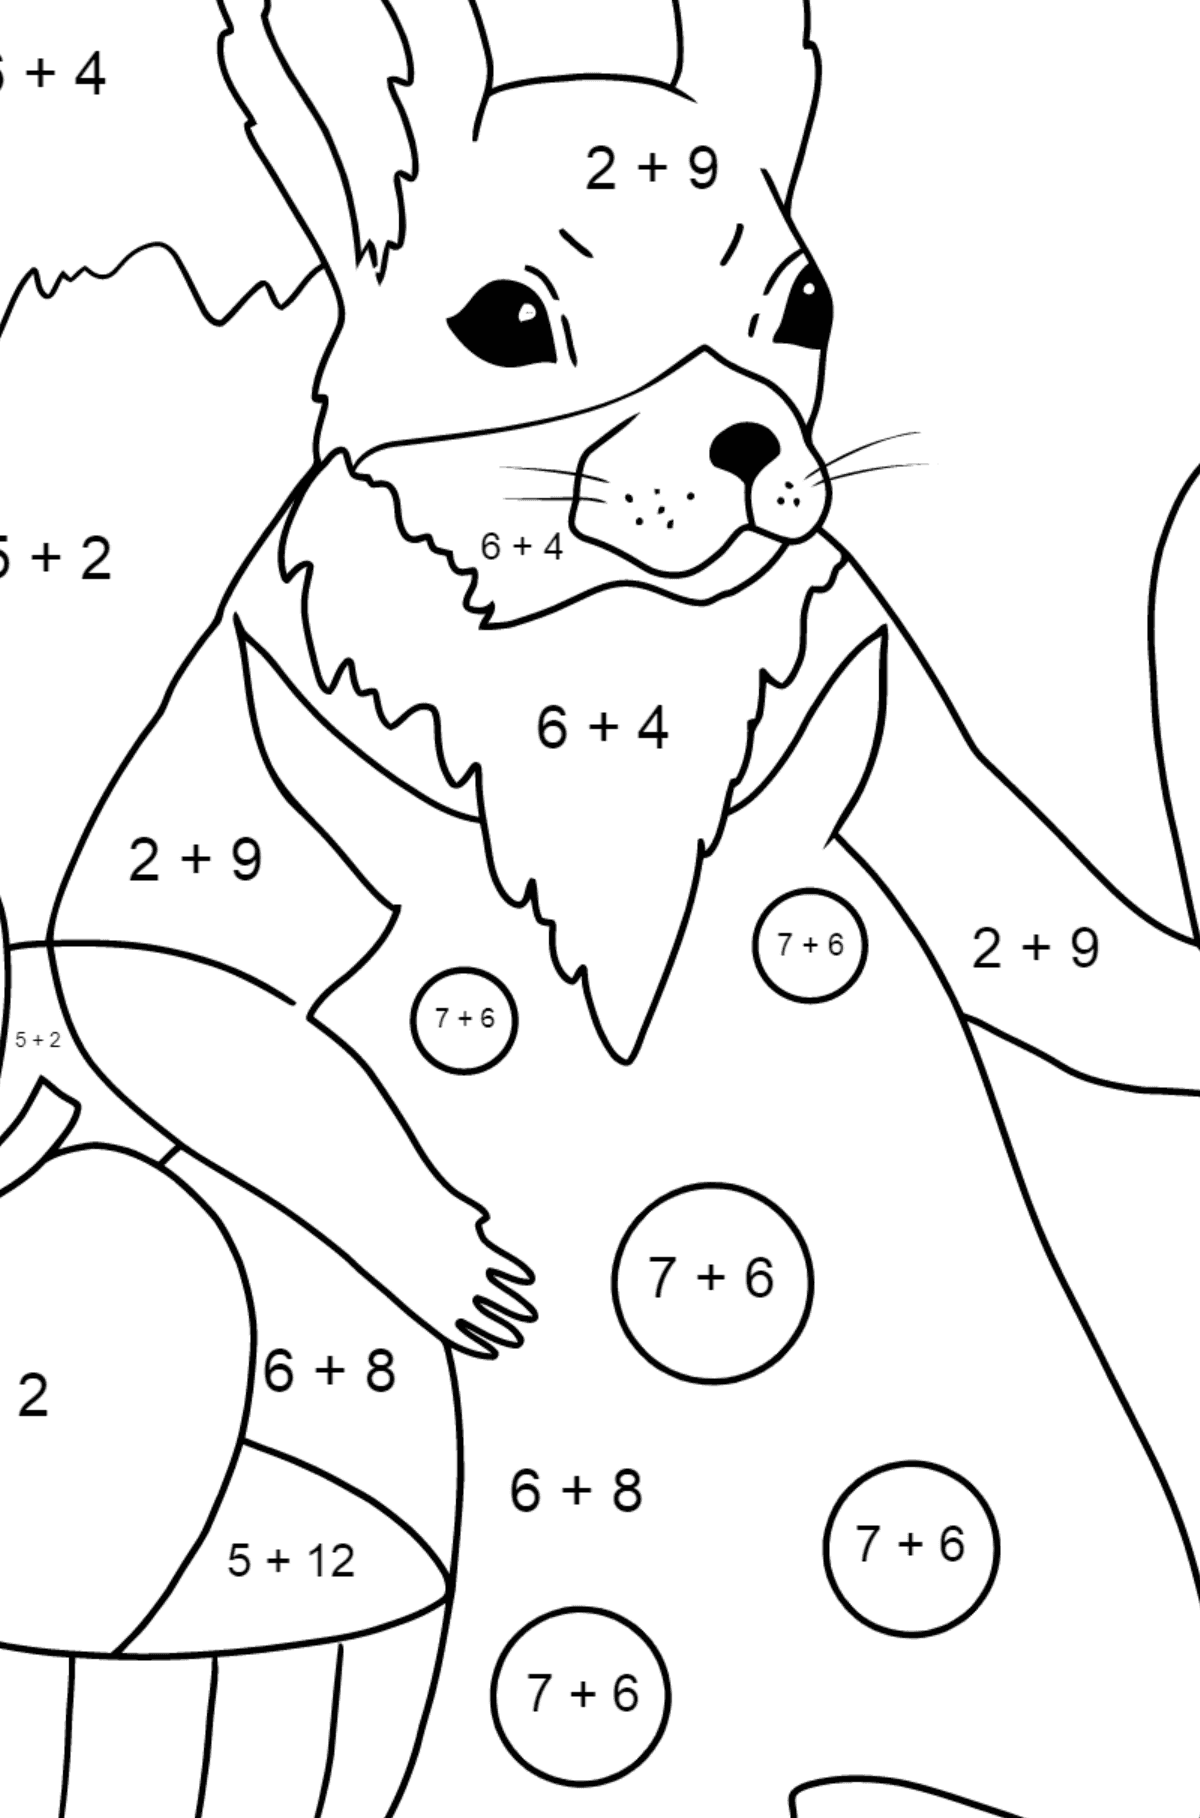 Sommerfärbung - Eichhörnchen - Mathe Ausmalbilder - Addition für Kinder